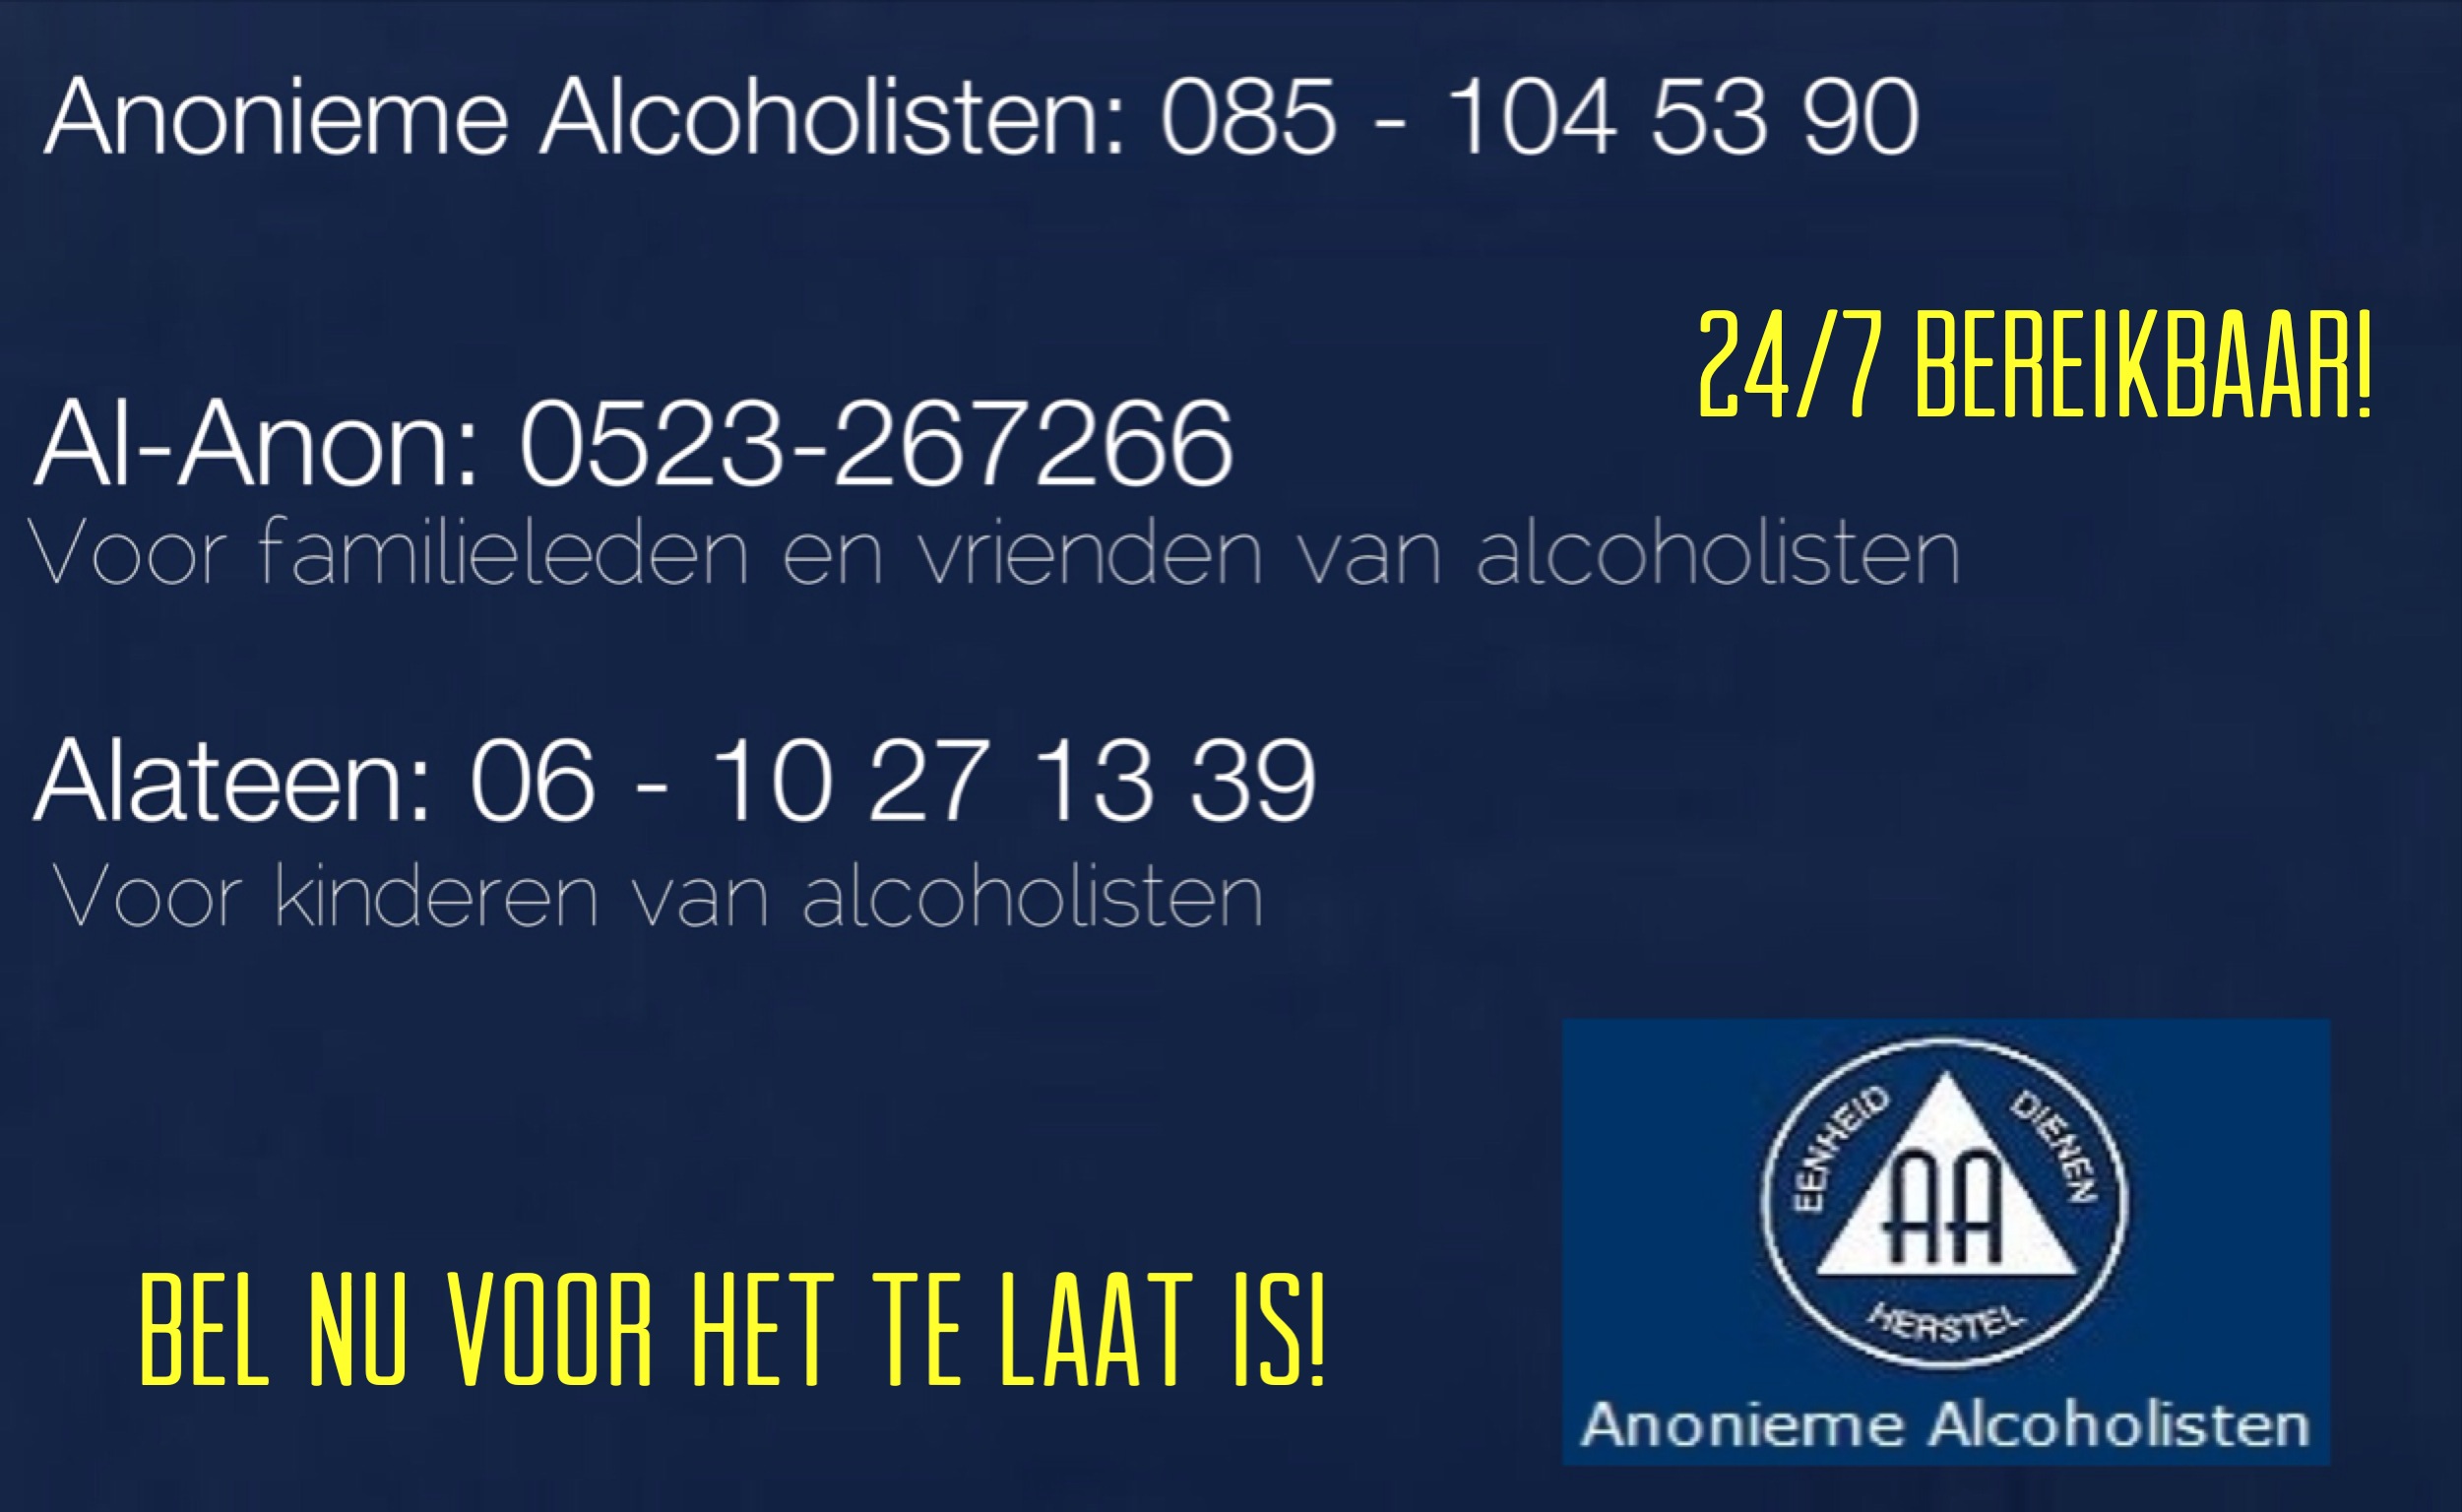 (A) Anonieme Alcoholisten (AA) DE ORGANISATIE: Anonieme Alcoholisten is het oorspronkelijke twaalfstappenprogramma.